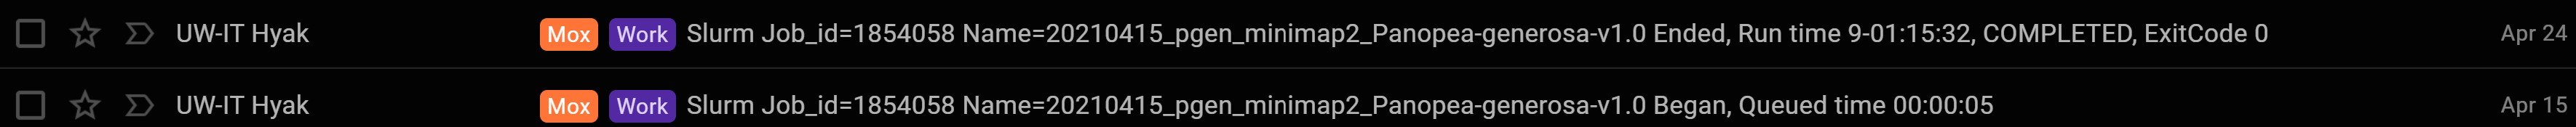 minimap2 runtime on Mox